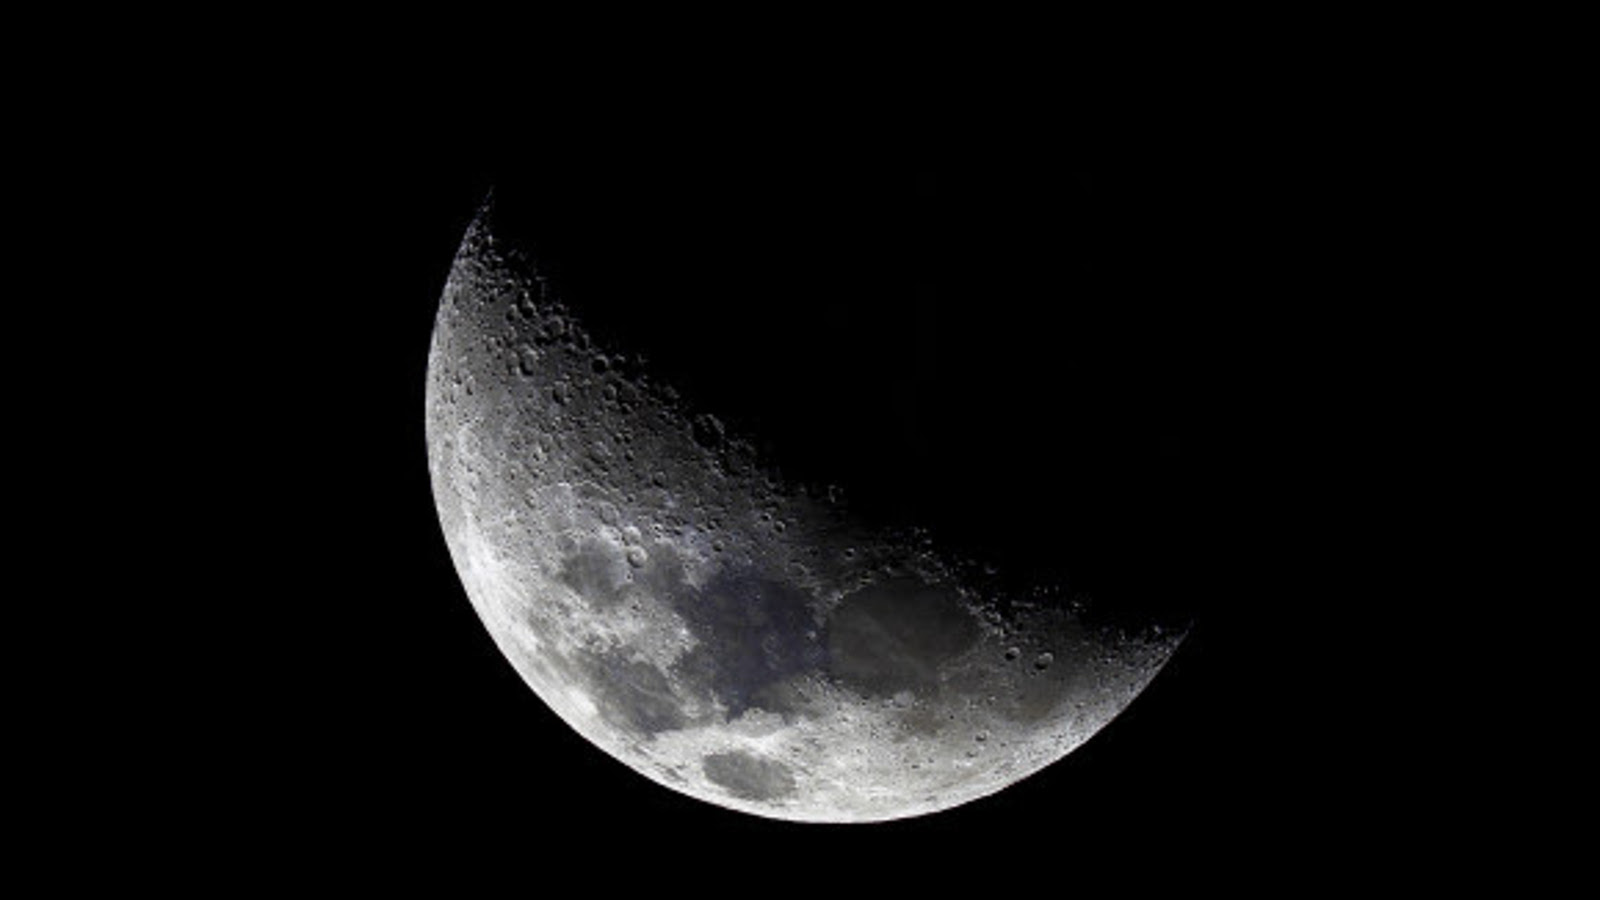 Kuvassa on kuu ja siitä näkyy noin puolet ja osa himmeästi.  Valo näkyy vinosti vasemmalta oikealle.  Muu osa on mustaa musta-valkoisessa kuvassa.